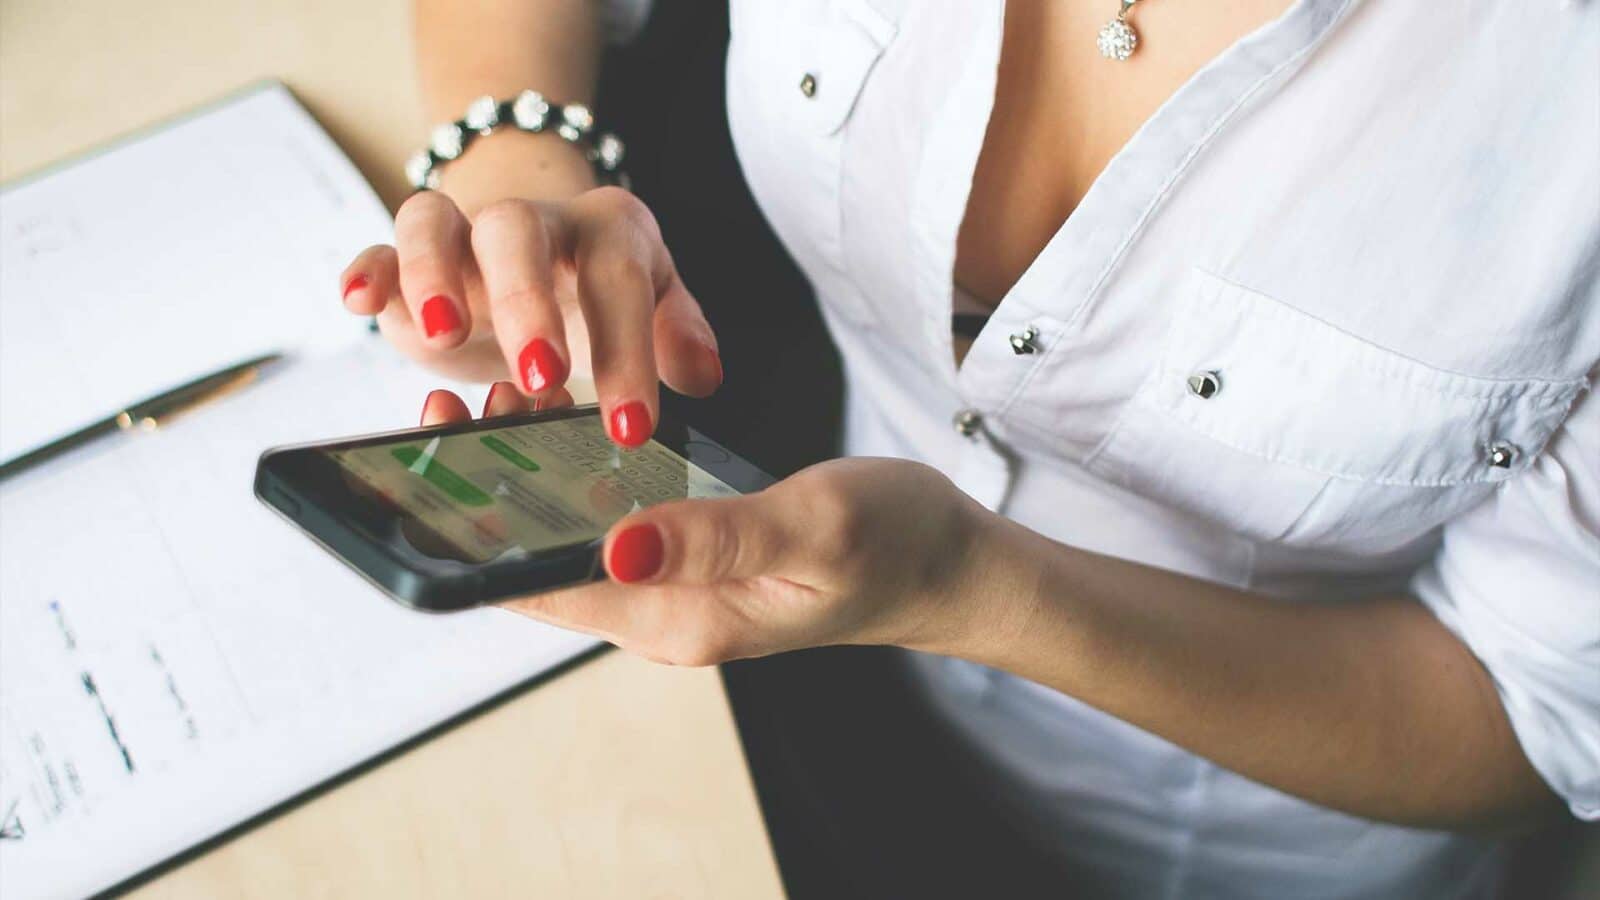 Una persona con lo smalto rosso usa uno smartphone su una scrivania con documenti e penna. Il focus è sulle mani e sul telefono.